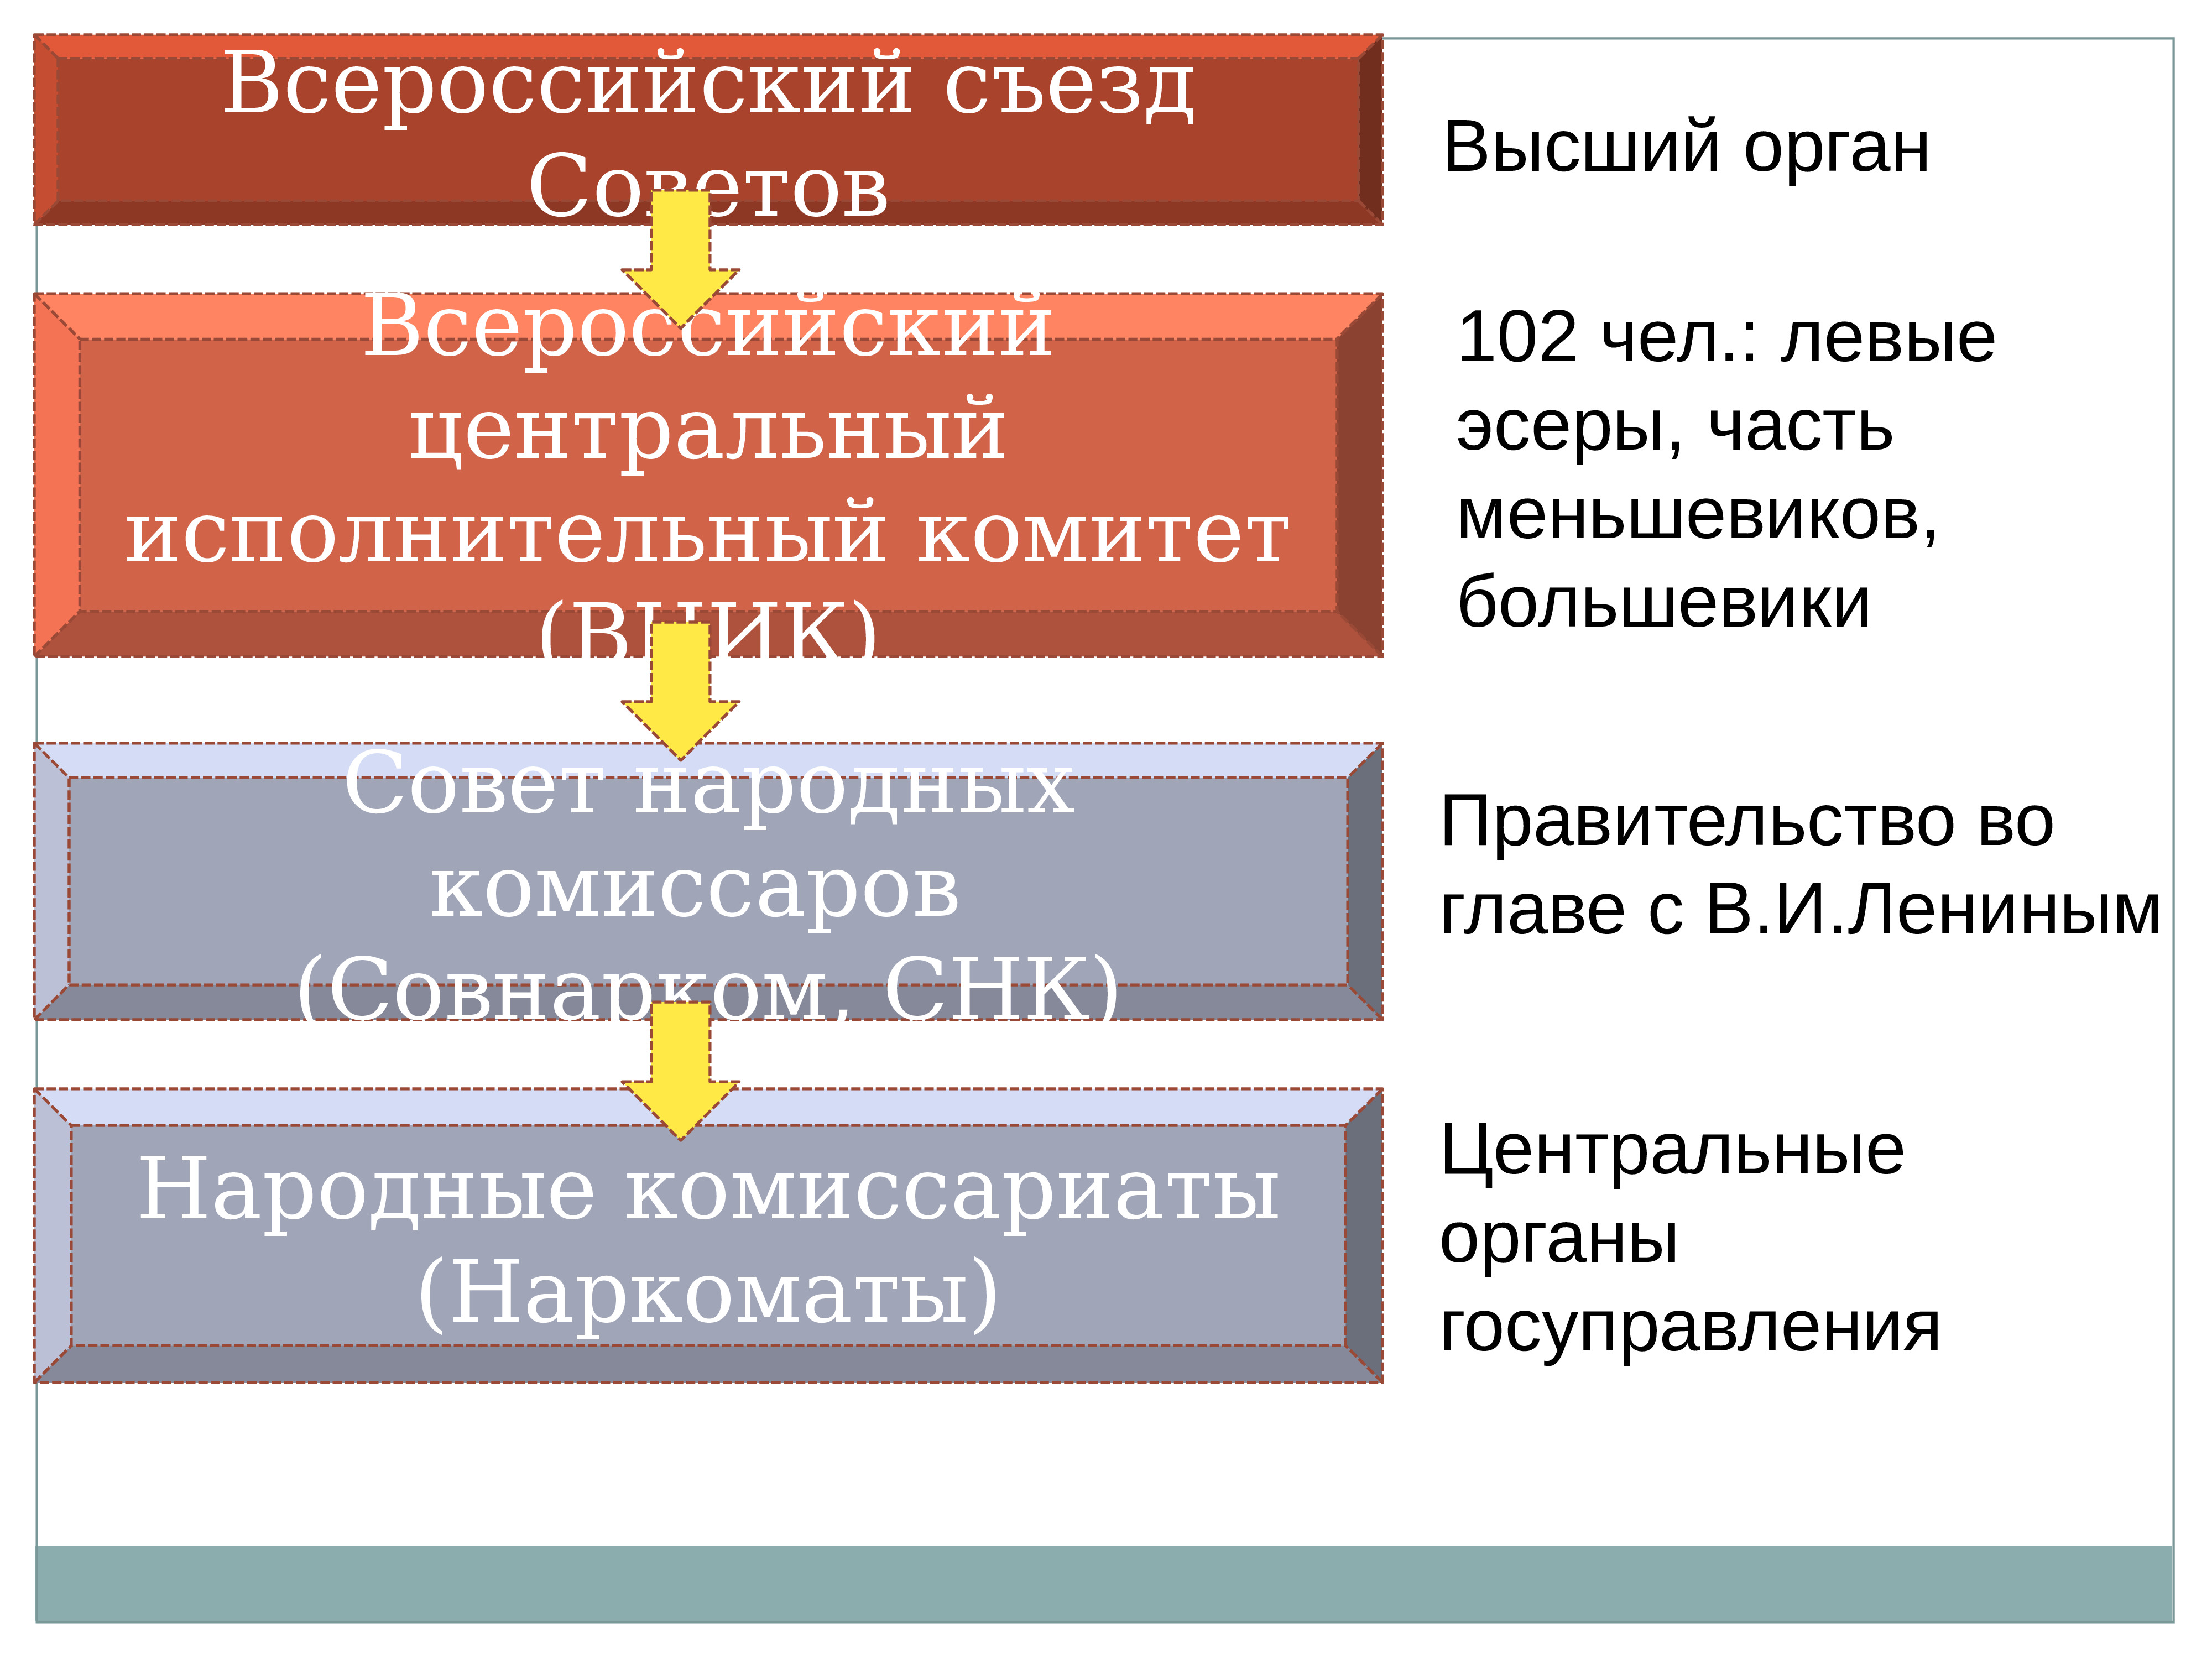 Первый всероссийский съезд советов и второй различия